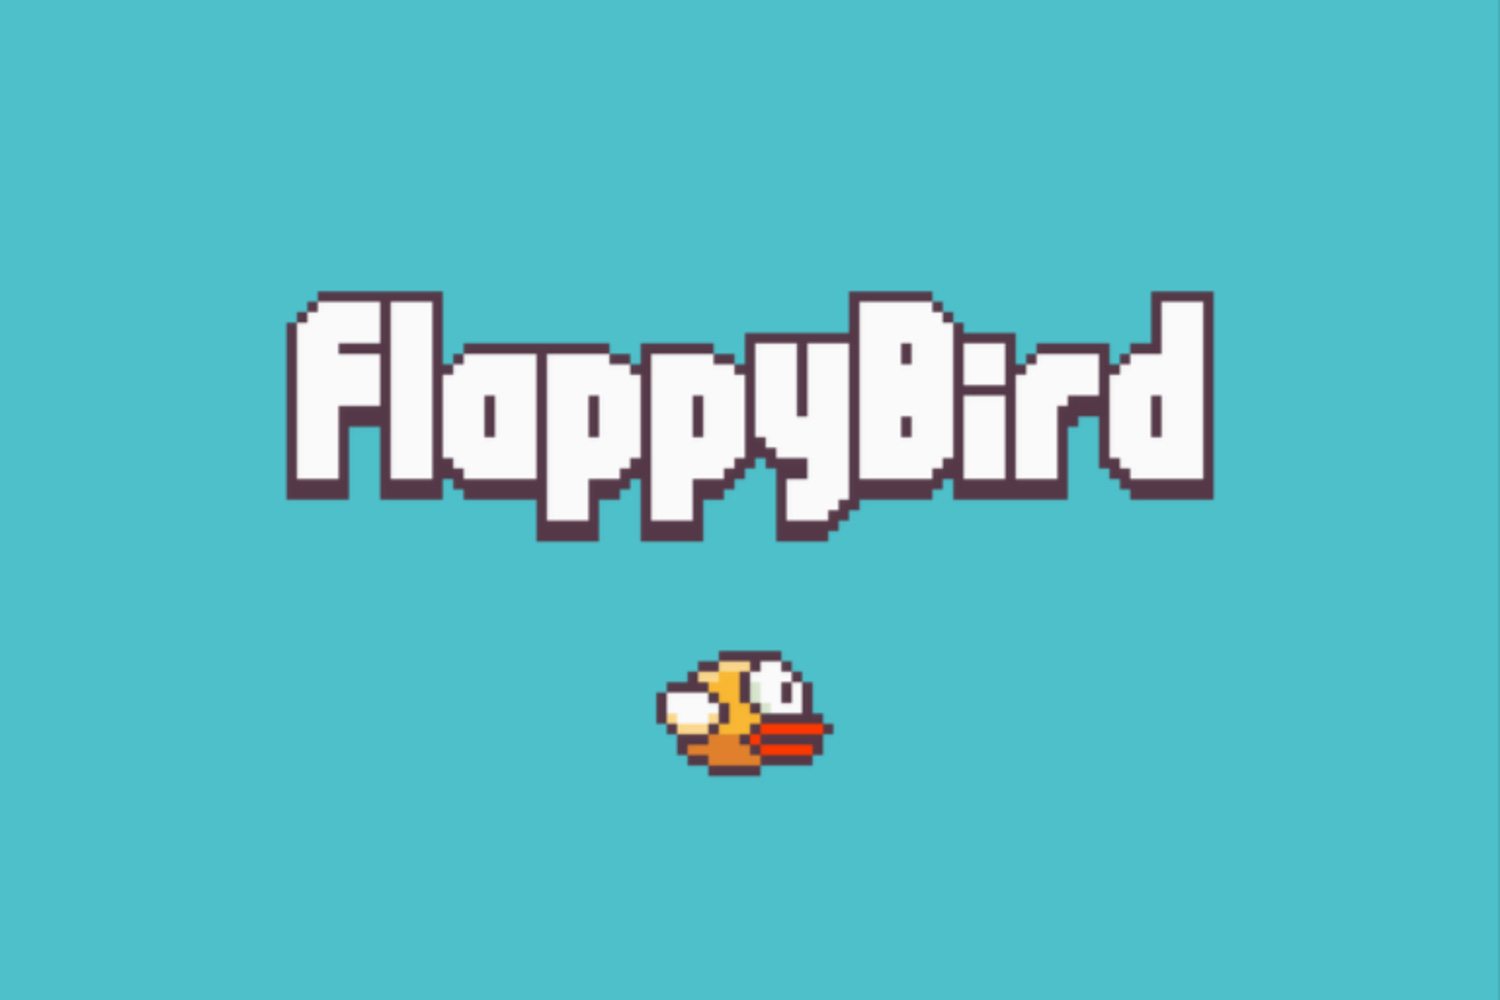 Flappy Bird game